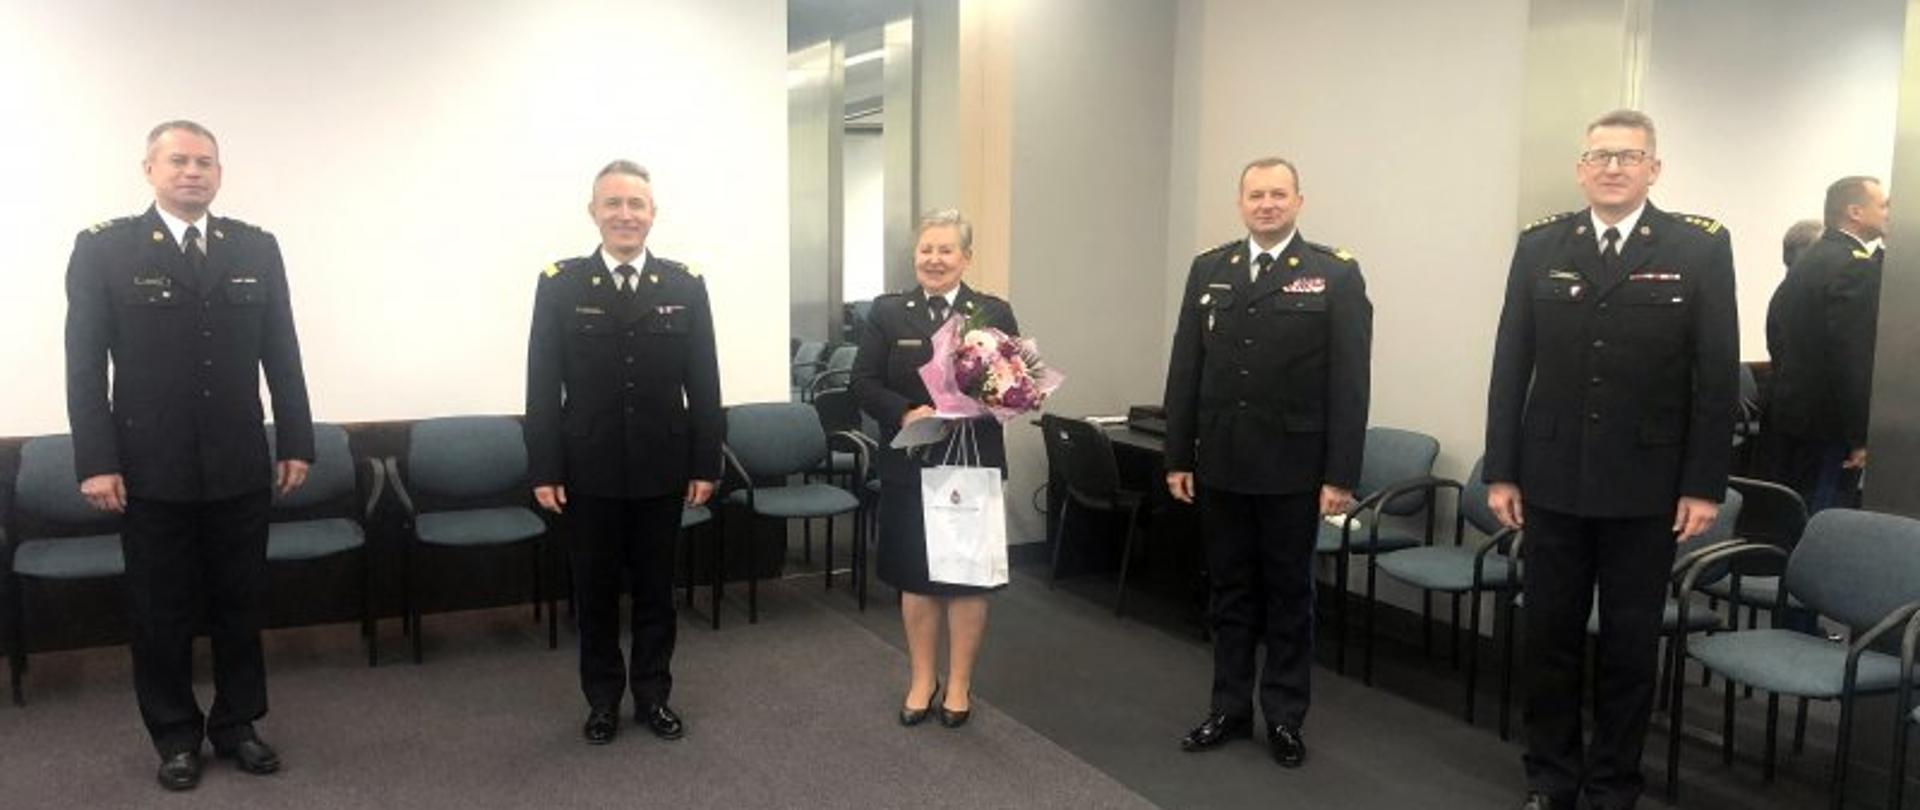 Pożegnanie ze służbą w PSP – na zdjęciu czterej komendanci PSP i st. bryg. Danuta Wojciechowska z kwiatami.